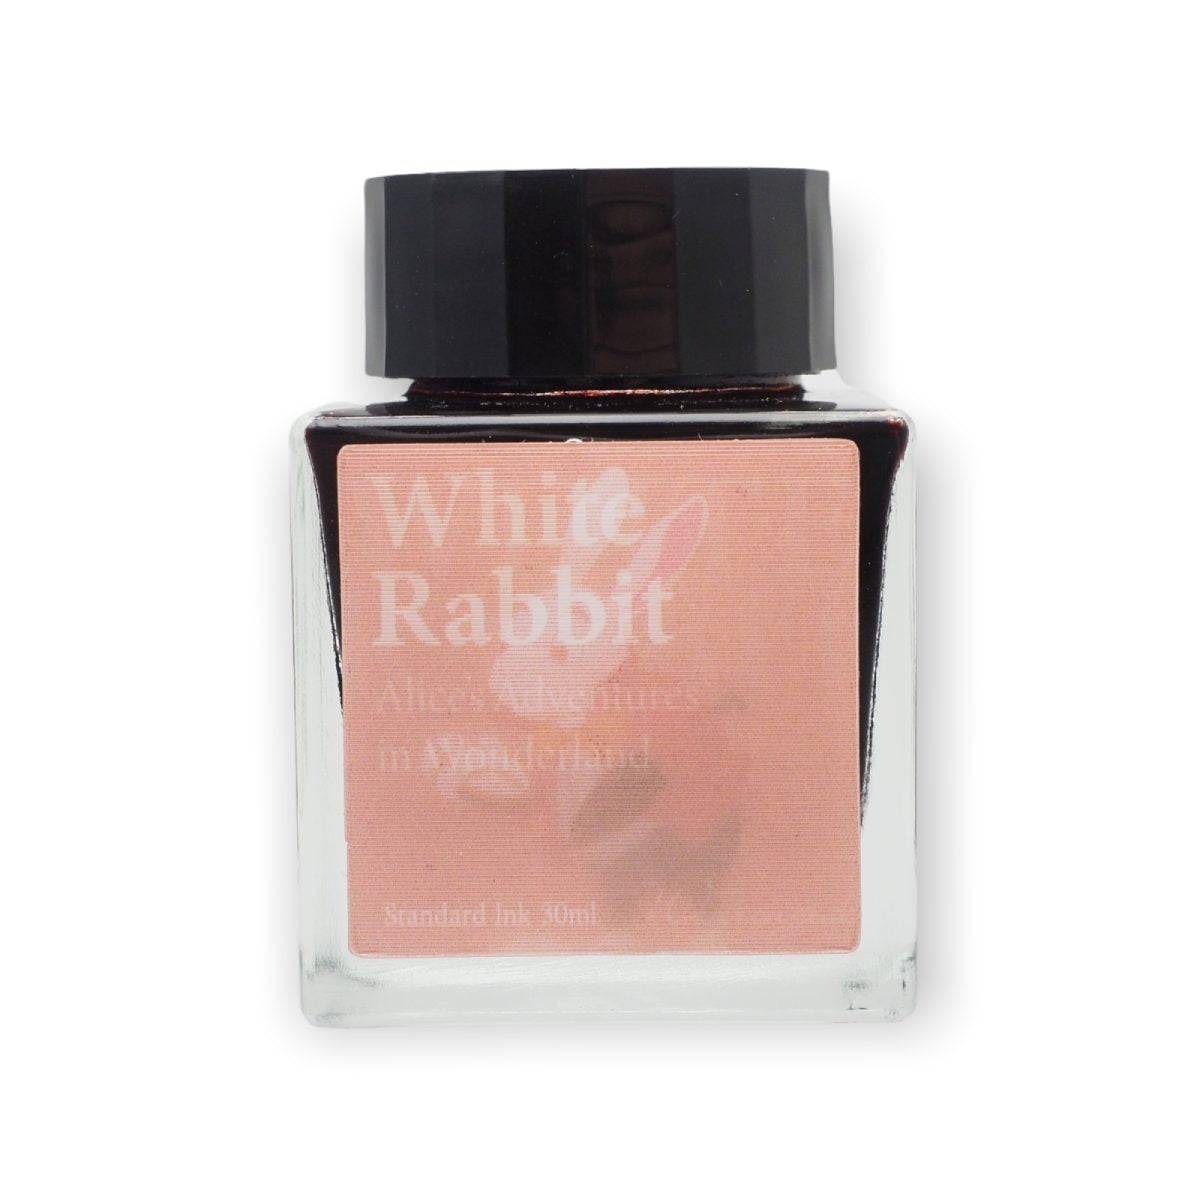 Wearingeul  inks - White Rabbit